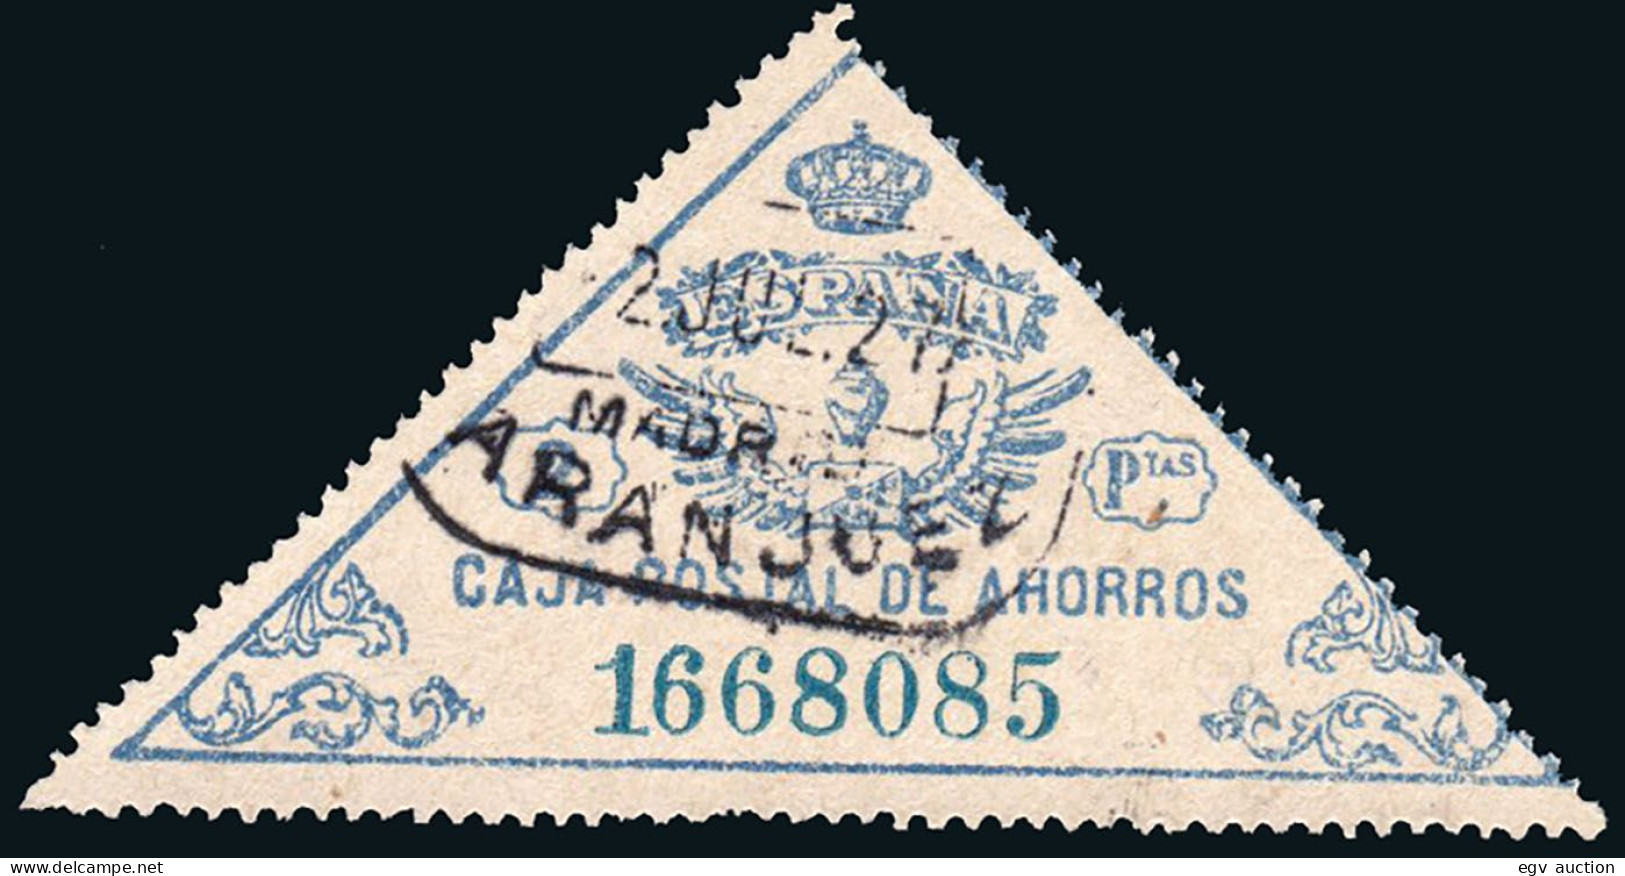 Madrid - Caja Postal Ahorros - Gálvez 4 - Mat "C.P.A. - Aranjuez" - Revenue Stamps